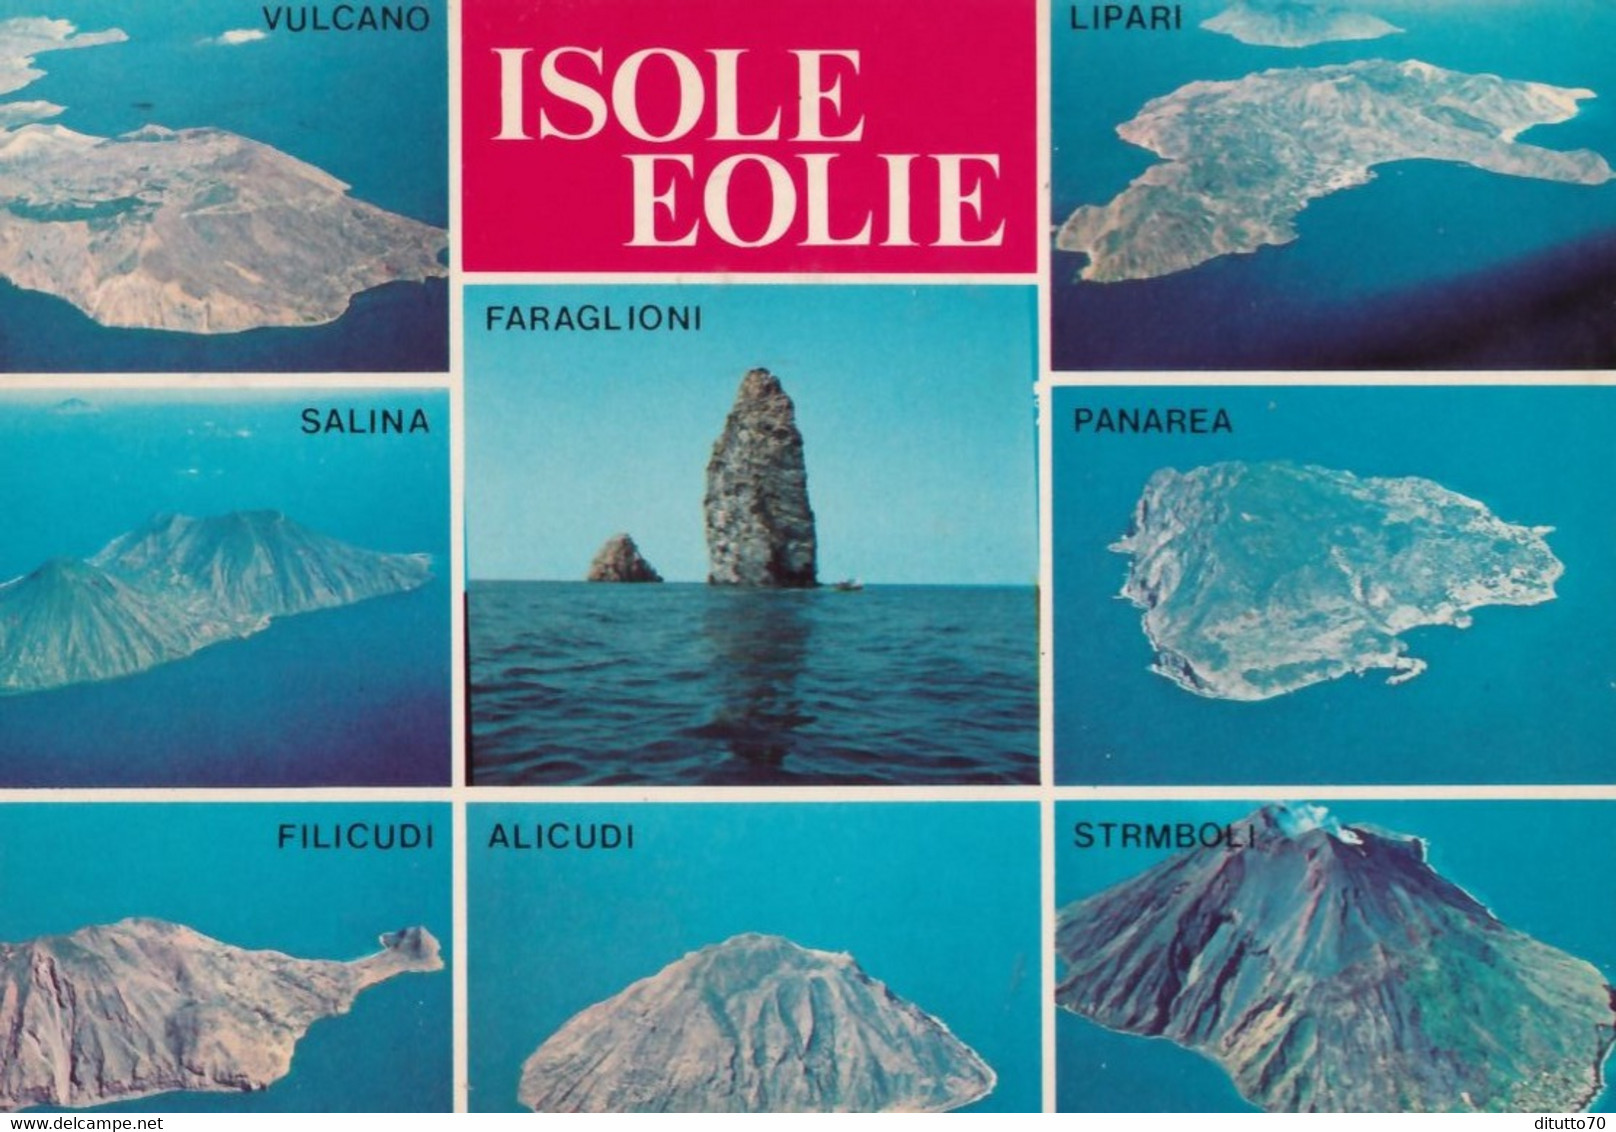 Isole Eolie - Vulcano - Lipari - Salina - Faraglioni - Panarea - Filicudi - Alicudi - Stromboli - Formato Grande Viaggia - Messina